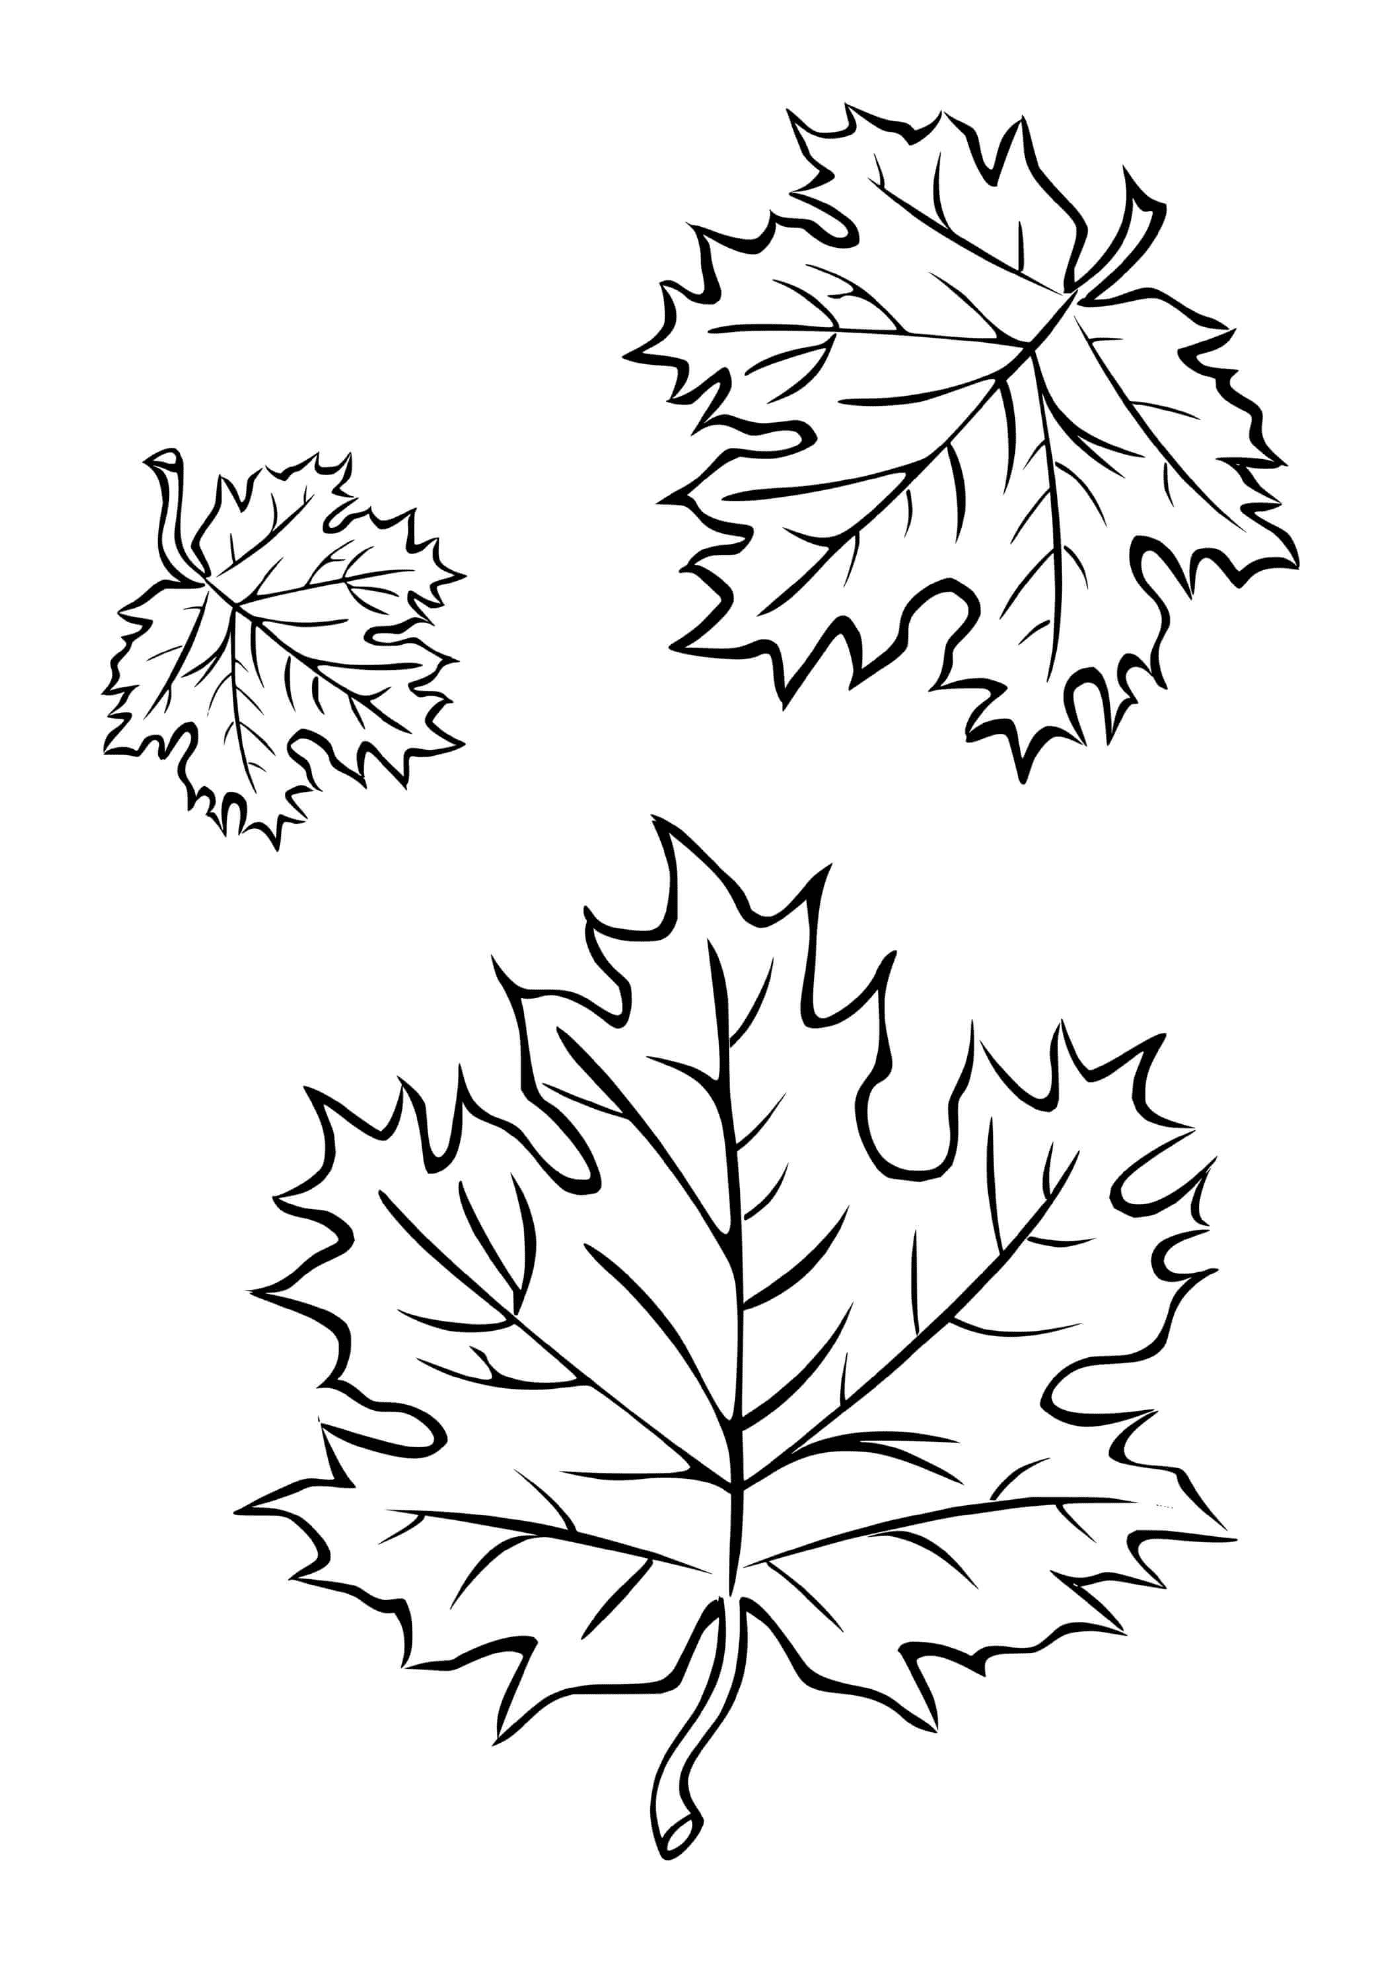  Three autumn leaves 